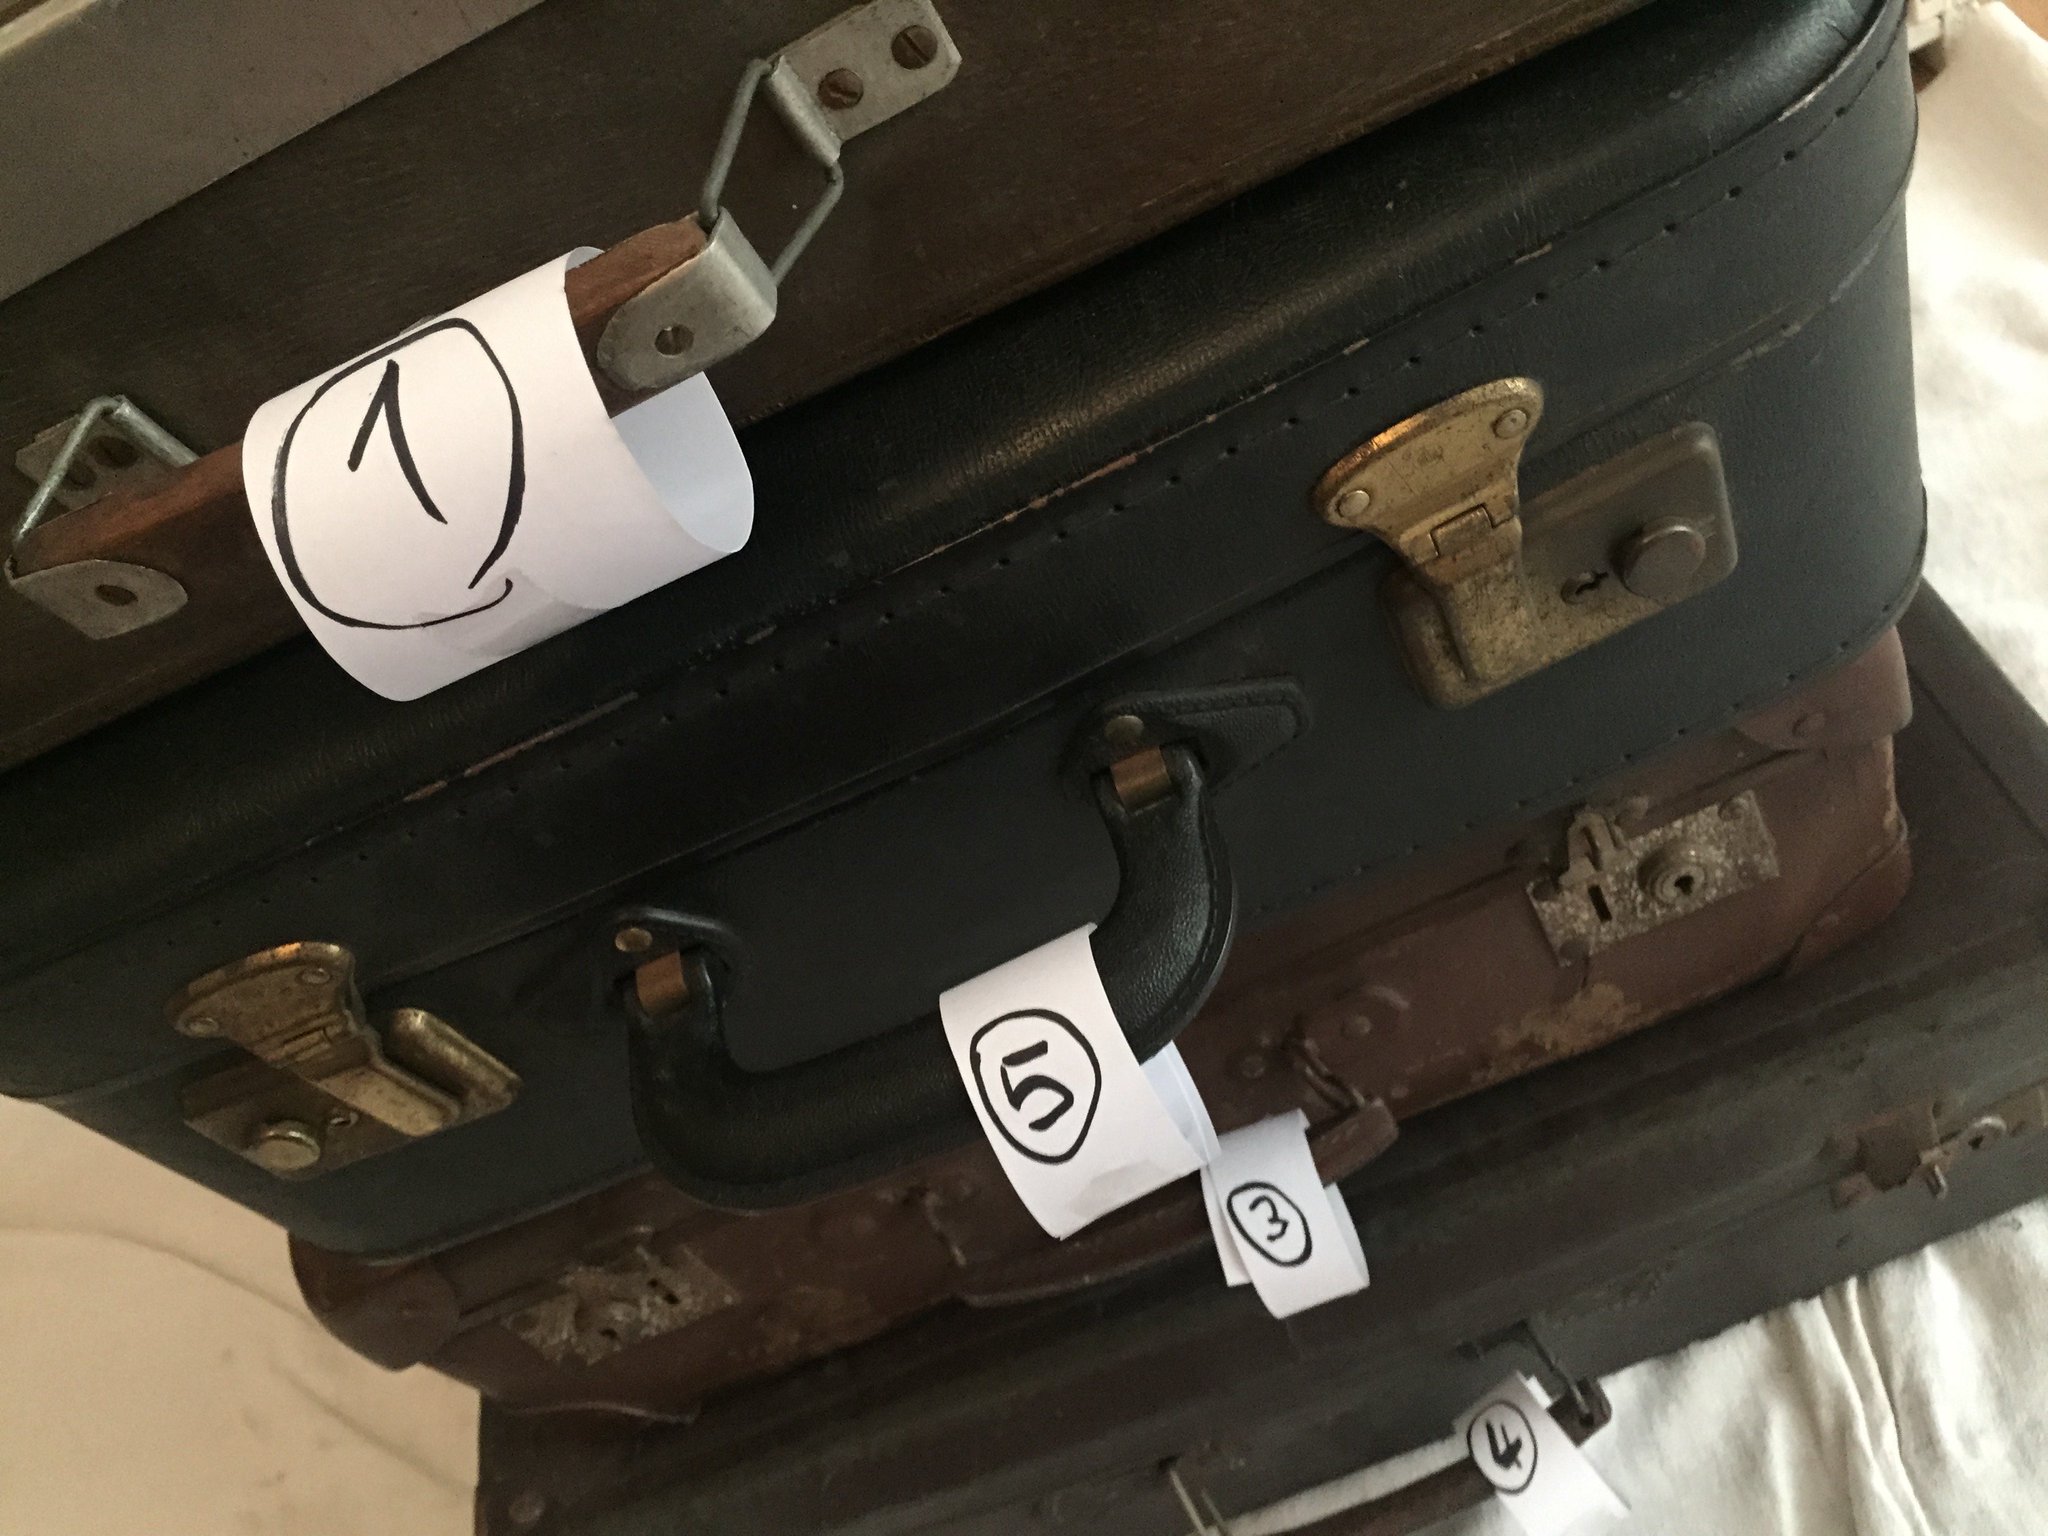 Pour finir j'accroche des numéros aux valises, et je redescends tout, salut les bestioles #Madeleineproject https://t.co/iEPp1SQDfA